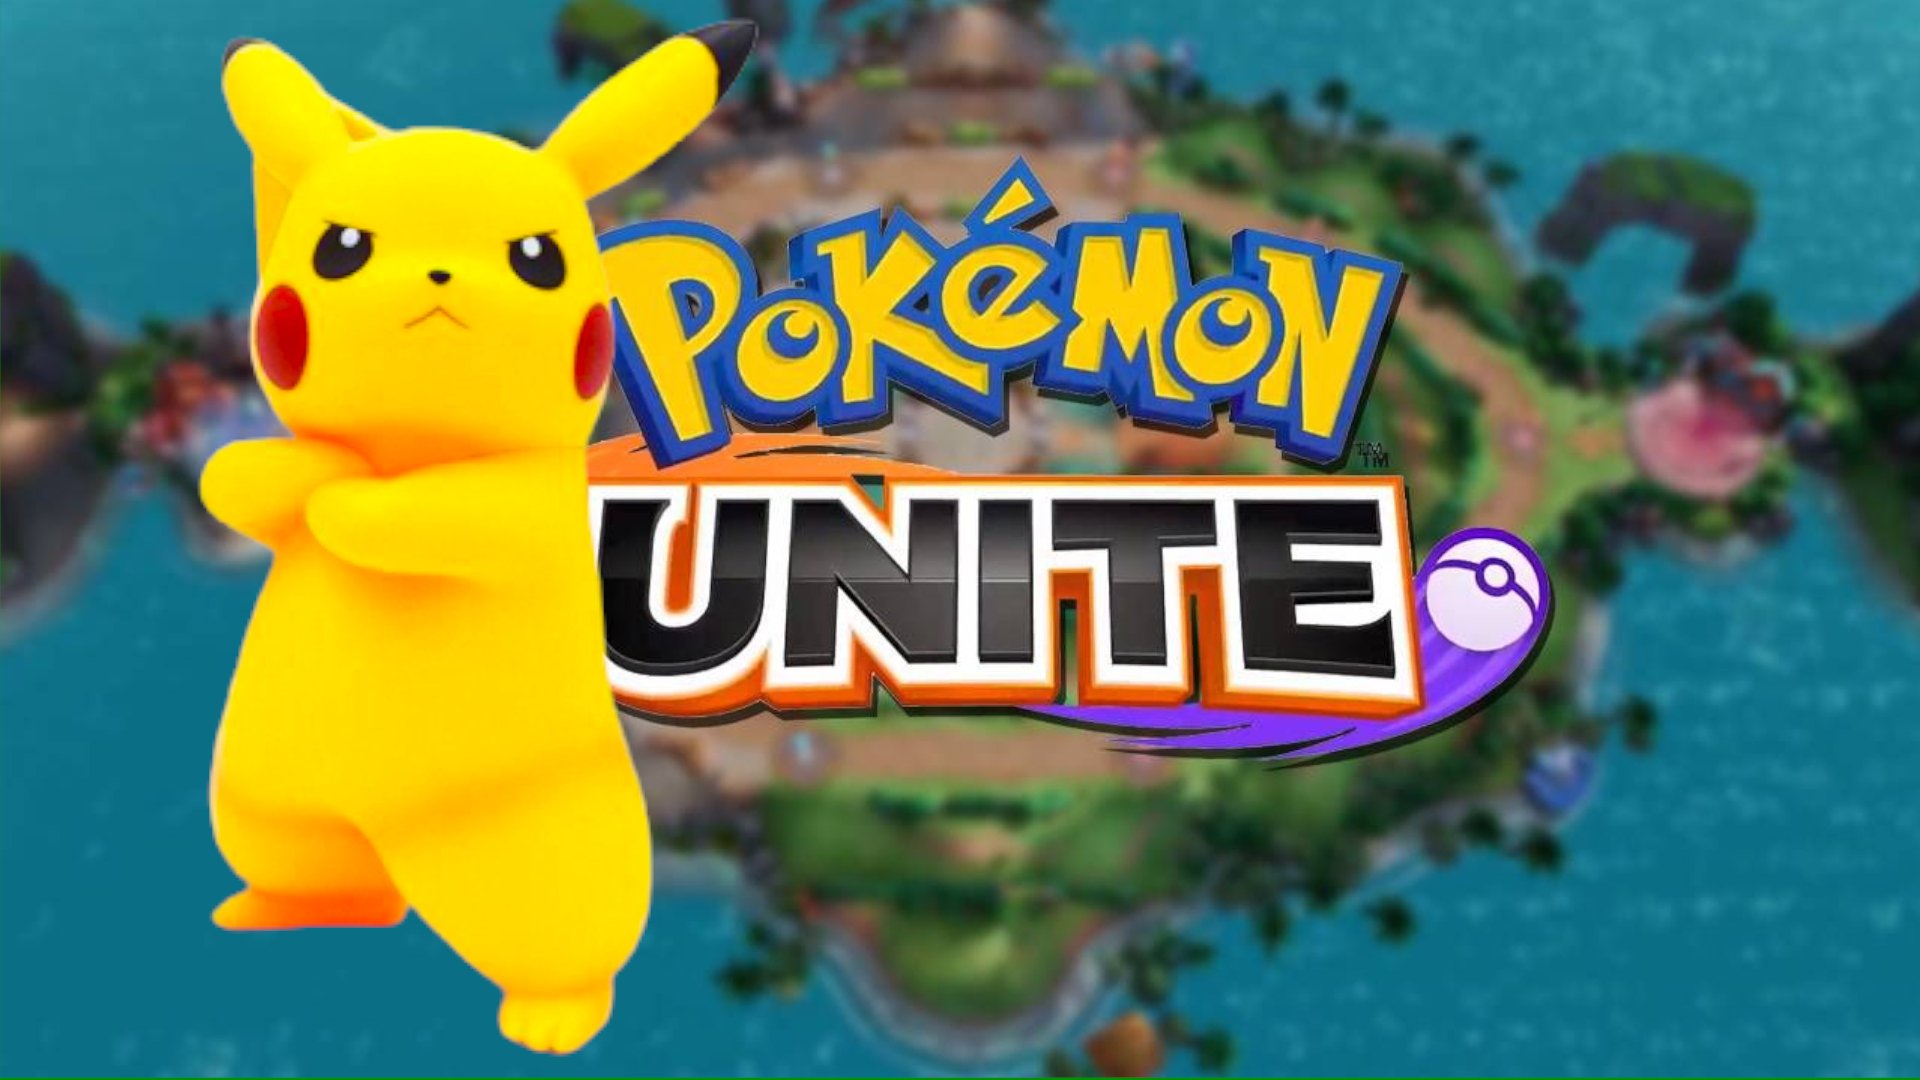 Покемон юнит. Покемон Unity. Покемон Уните. Pokemon Unite картинки. Pokemon Unite фон.